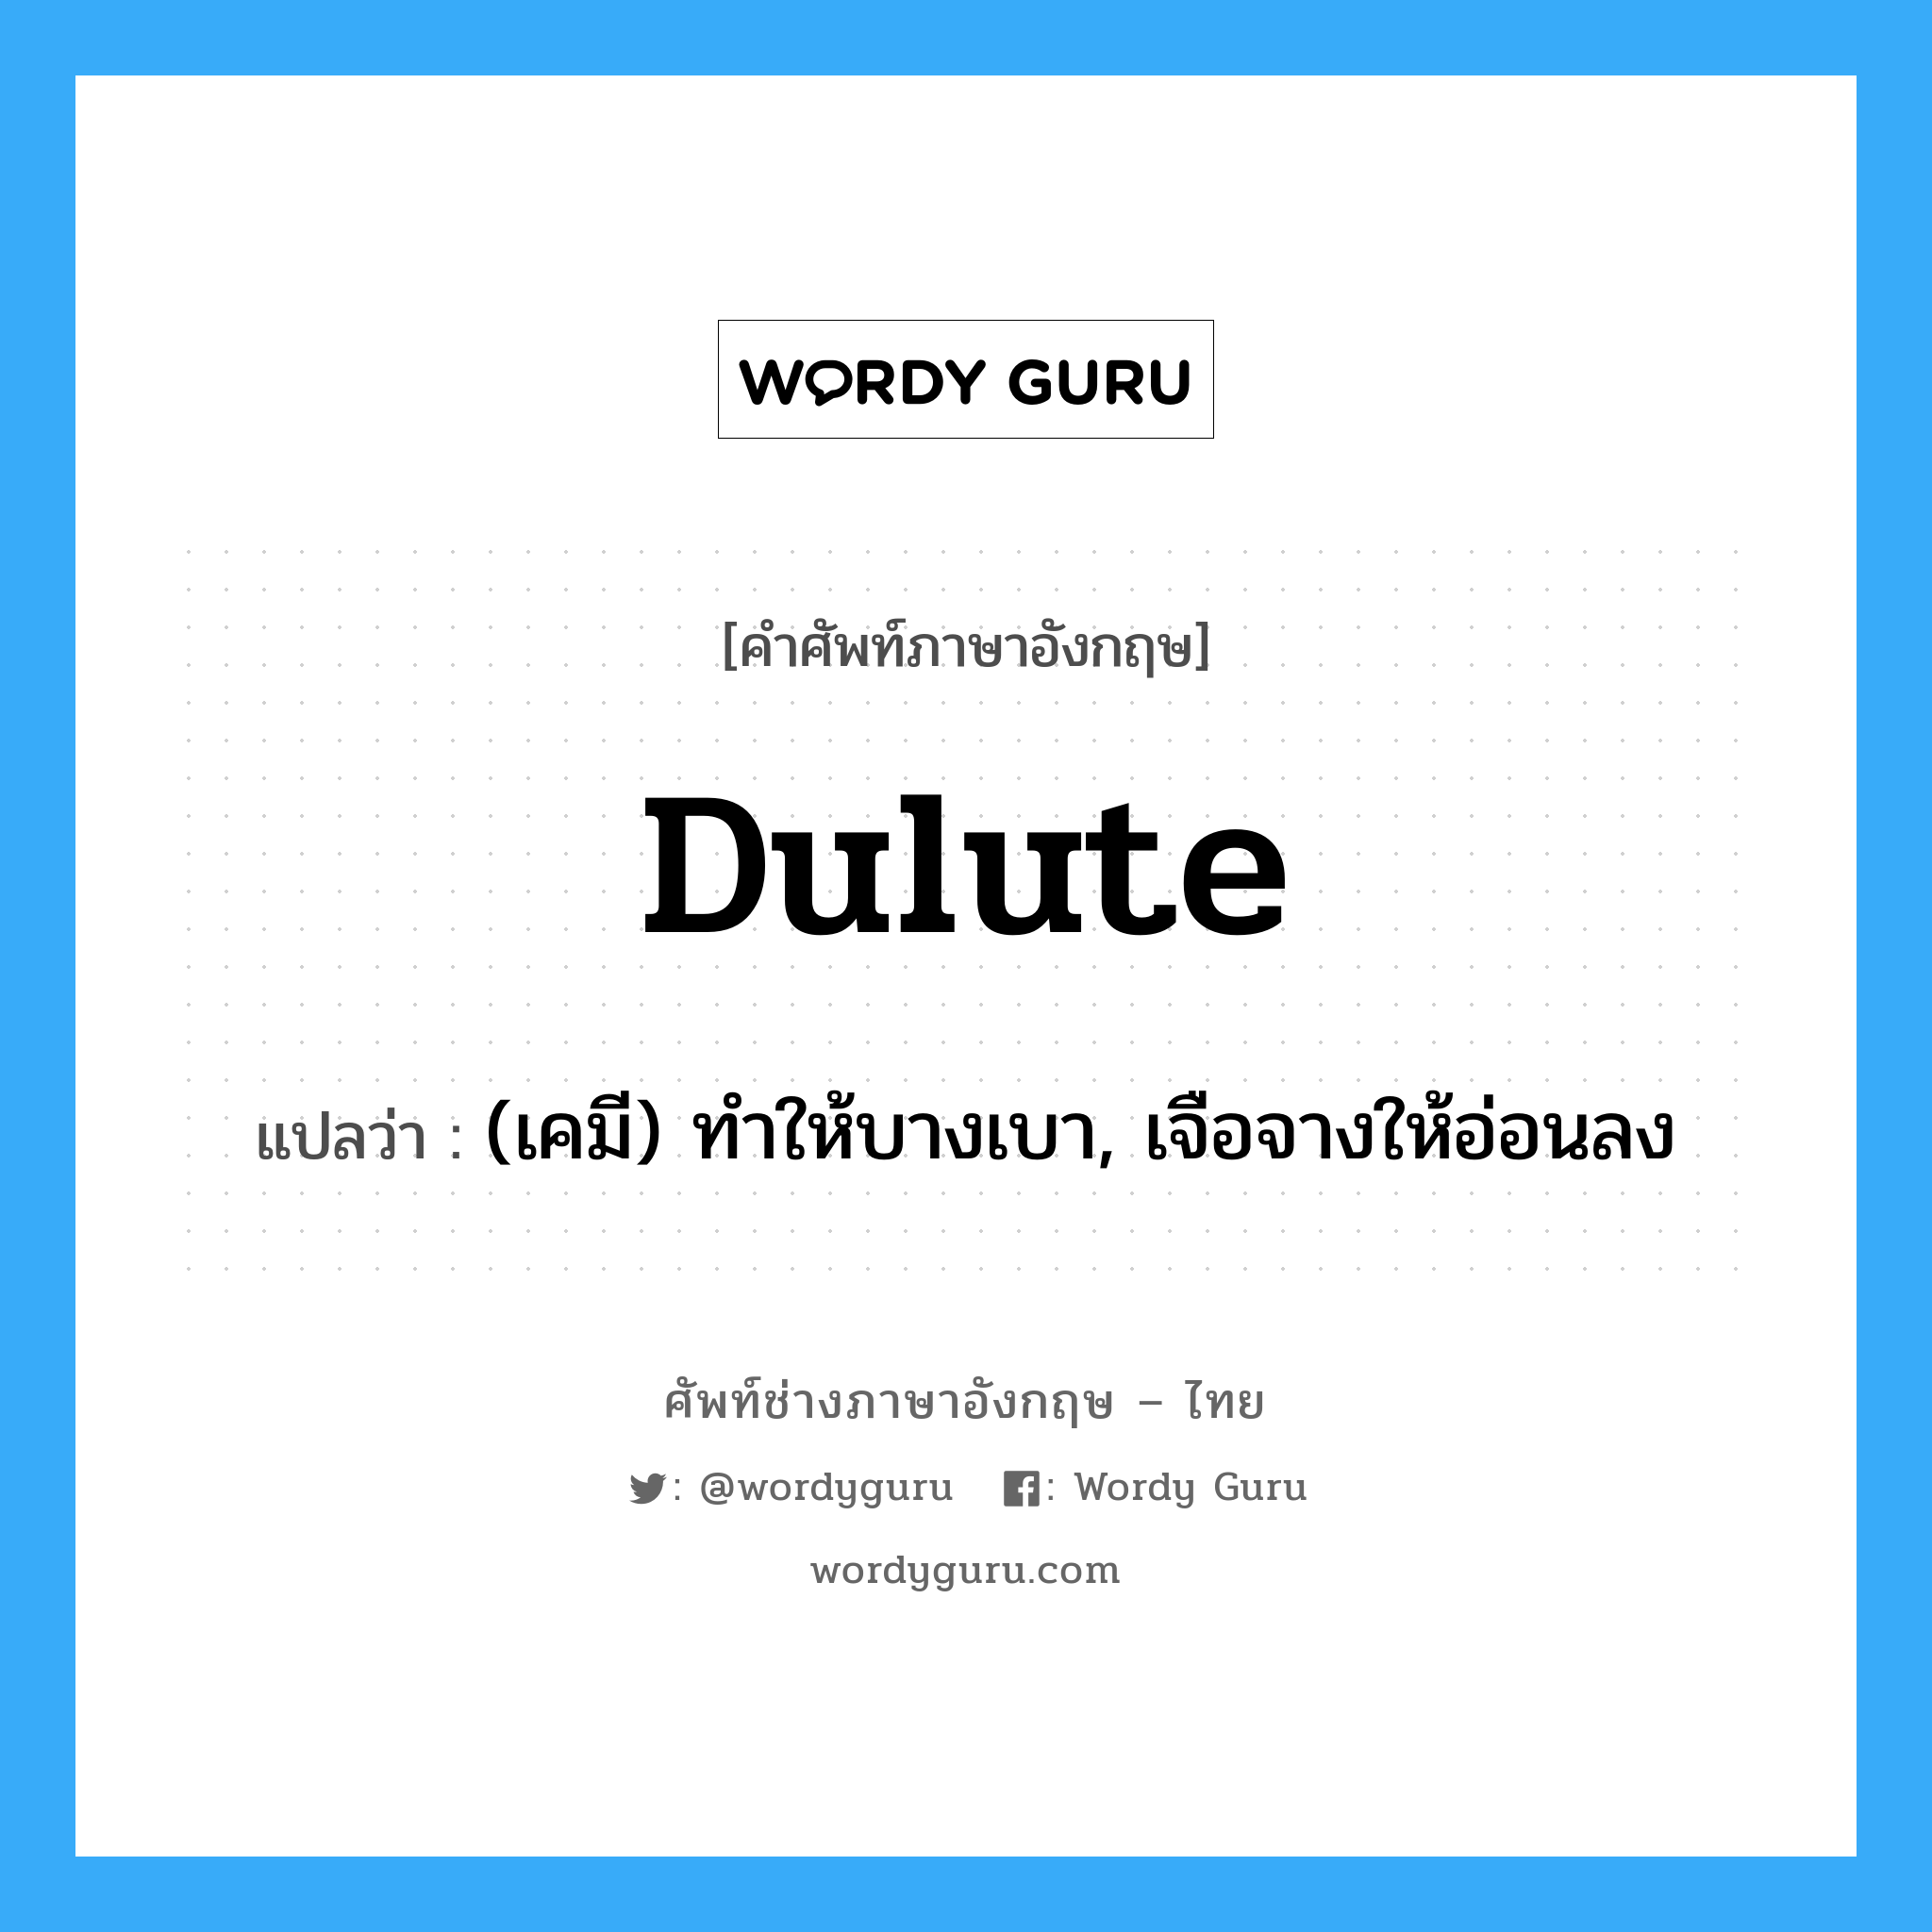 dulute แปลว่า?, คำศัพท์ช่างภาษาอังกฤษ - ไทย dulute คำศัพท์ภาษาอังกฤษ dulute แปลว่า (เคมี) ทำให้บางเบา, เจือจางให้อ่อนลง